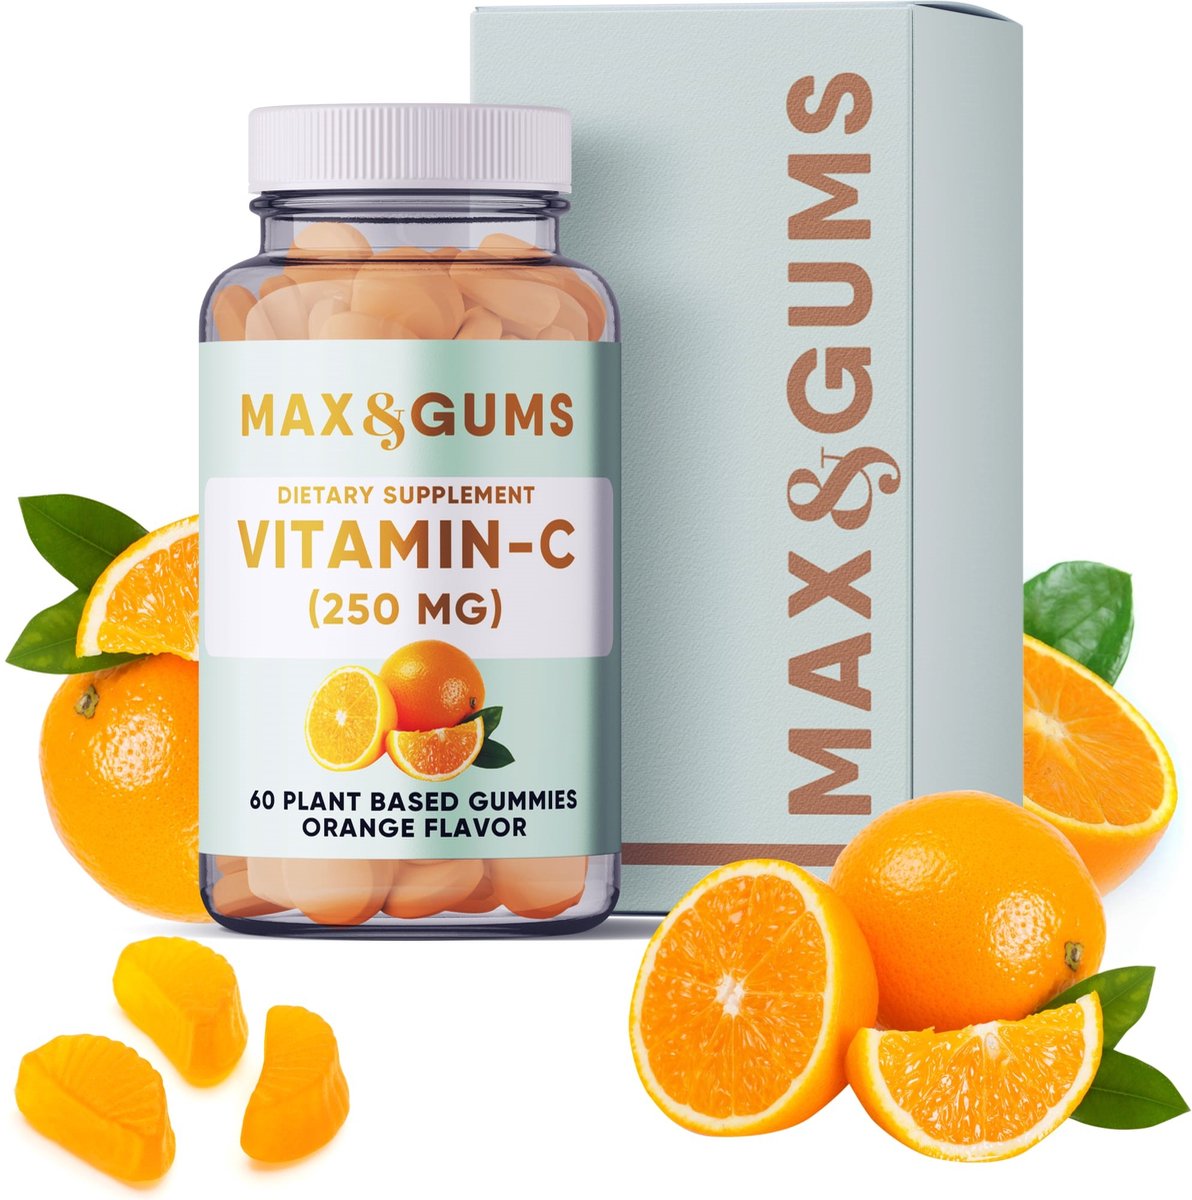 Max & Gums Vitamine C gummies - Vegan & glutenvrij - 60 gummies